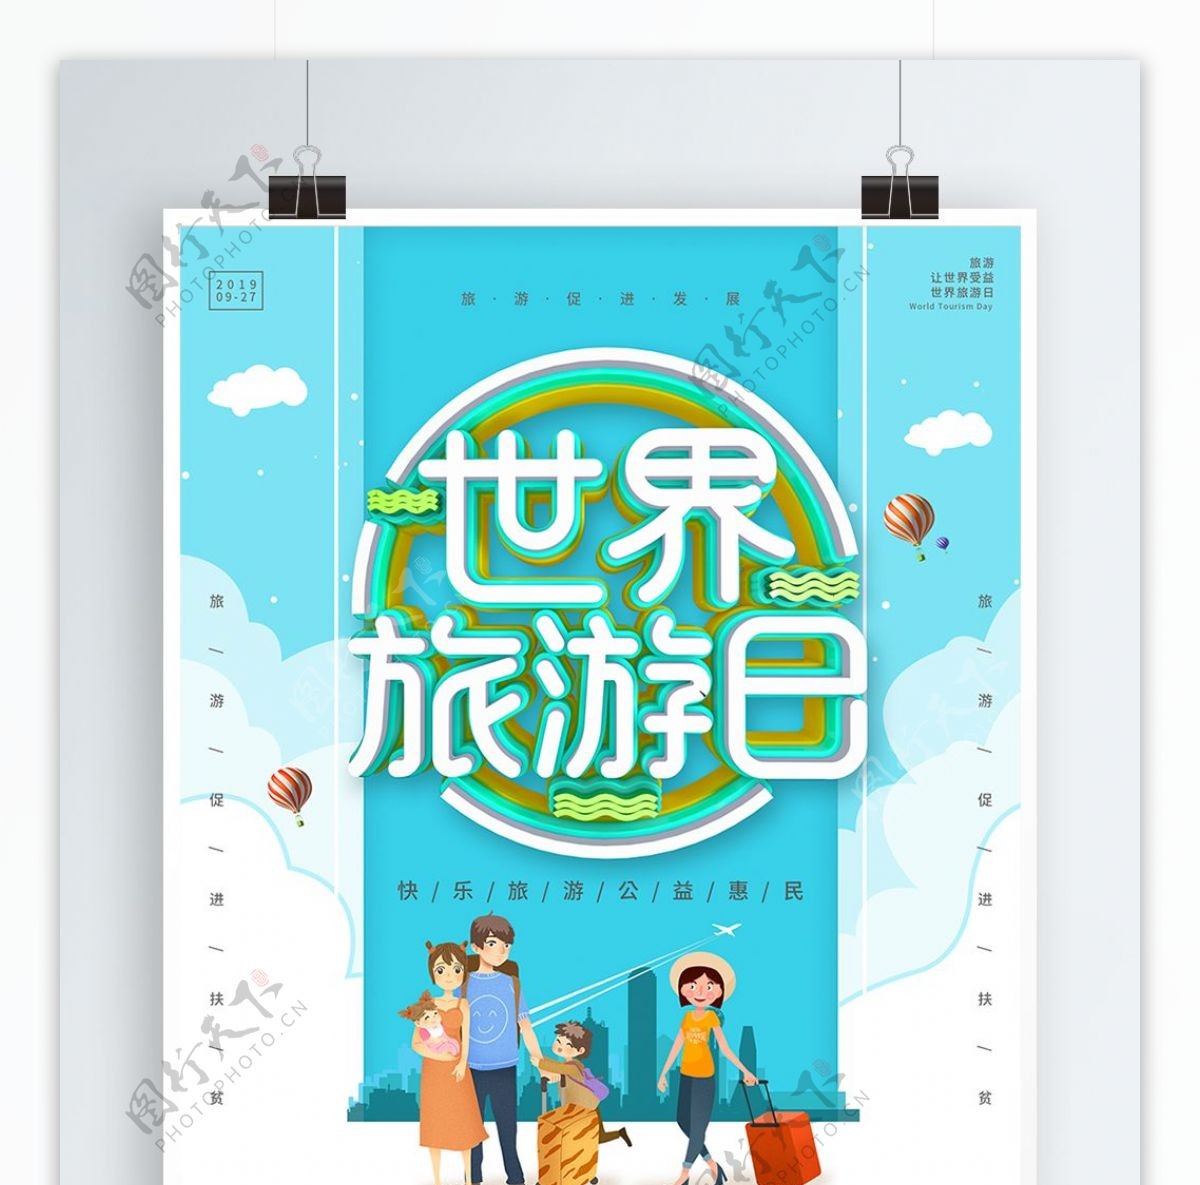 蓝色C4D世界旅游日宣传海报